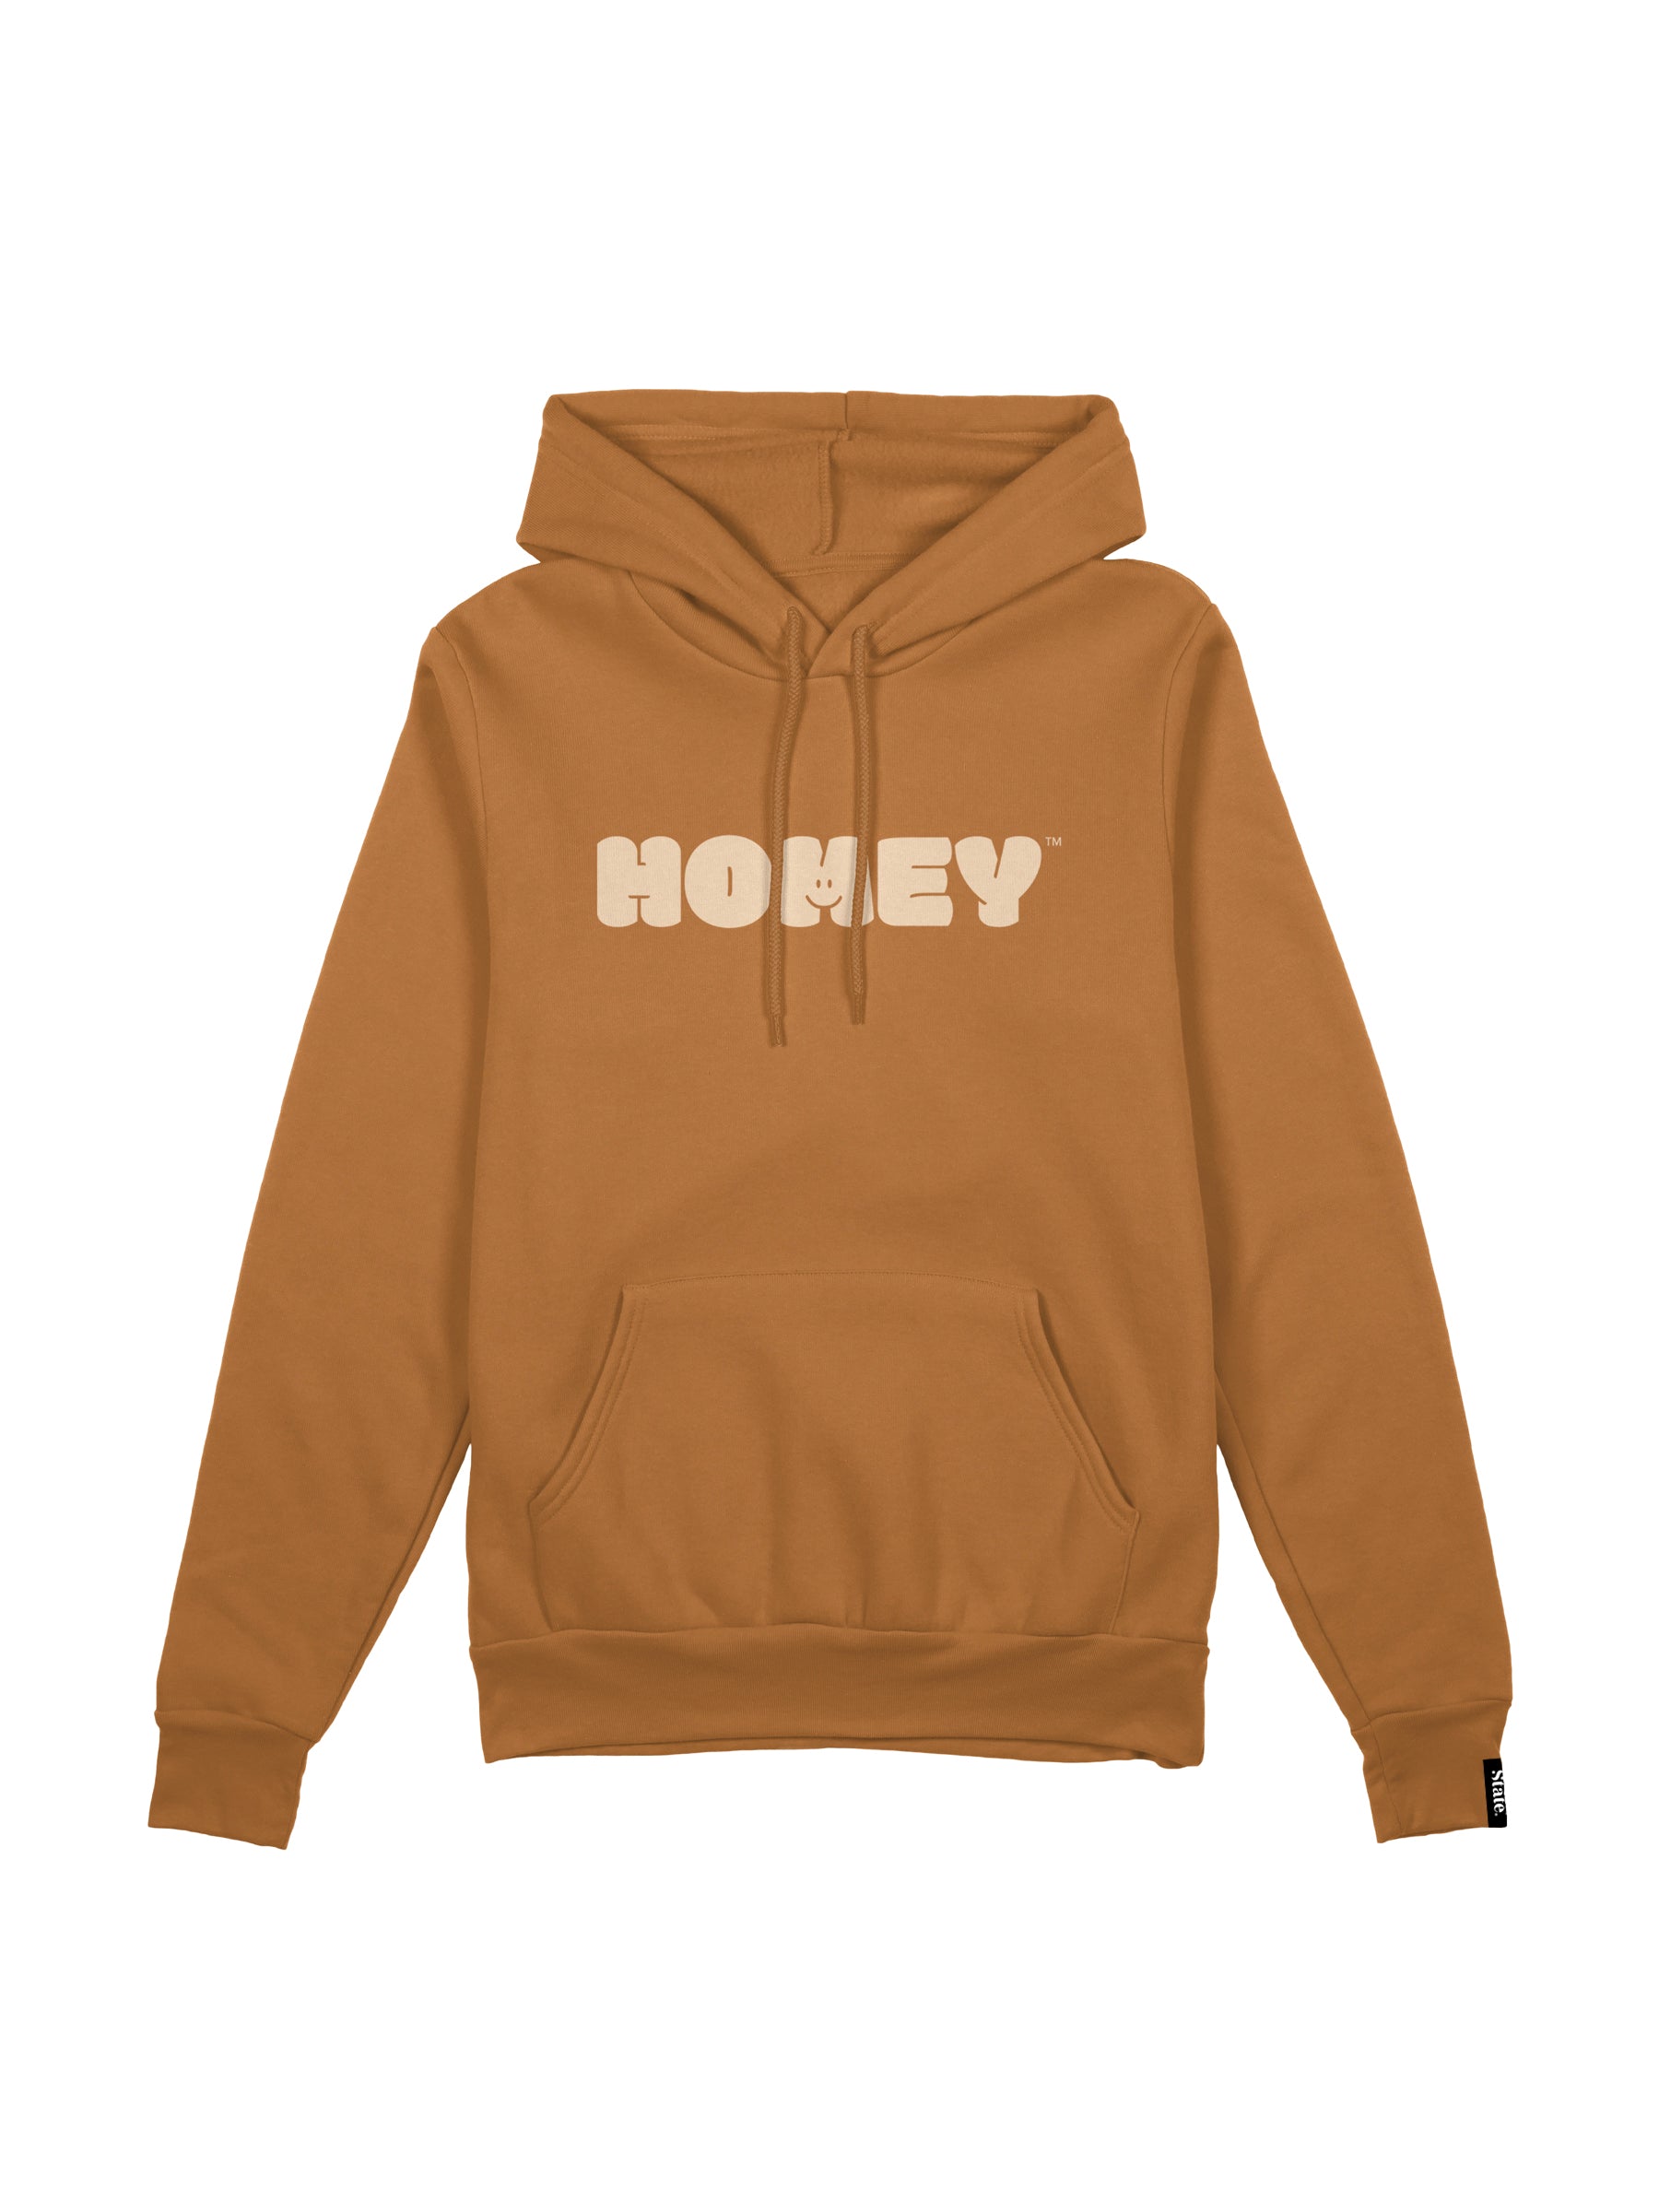 homey hoodie